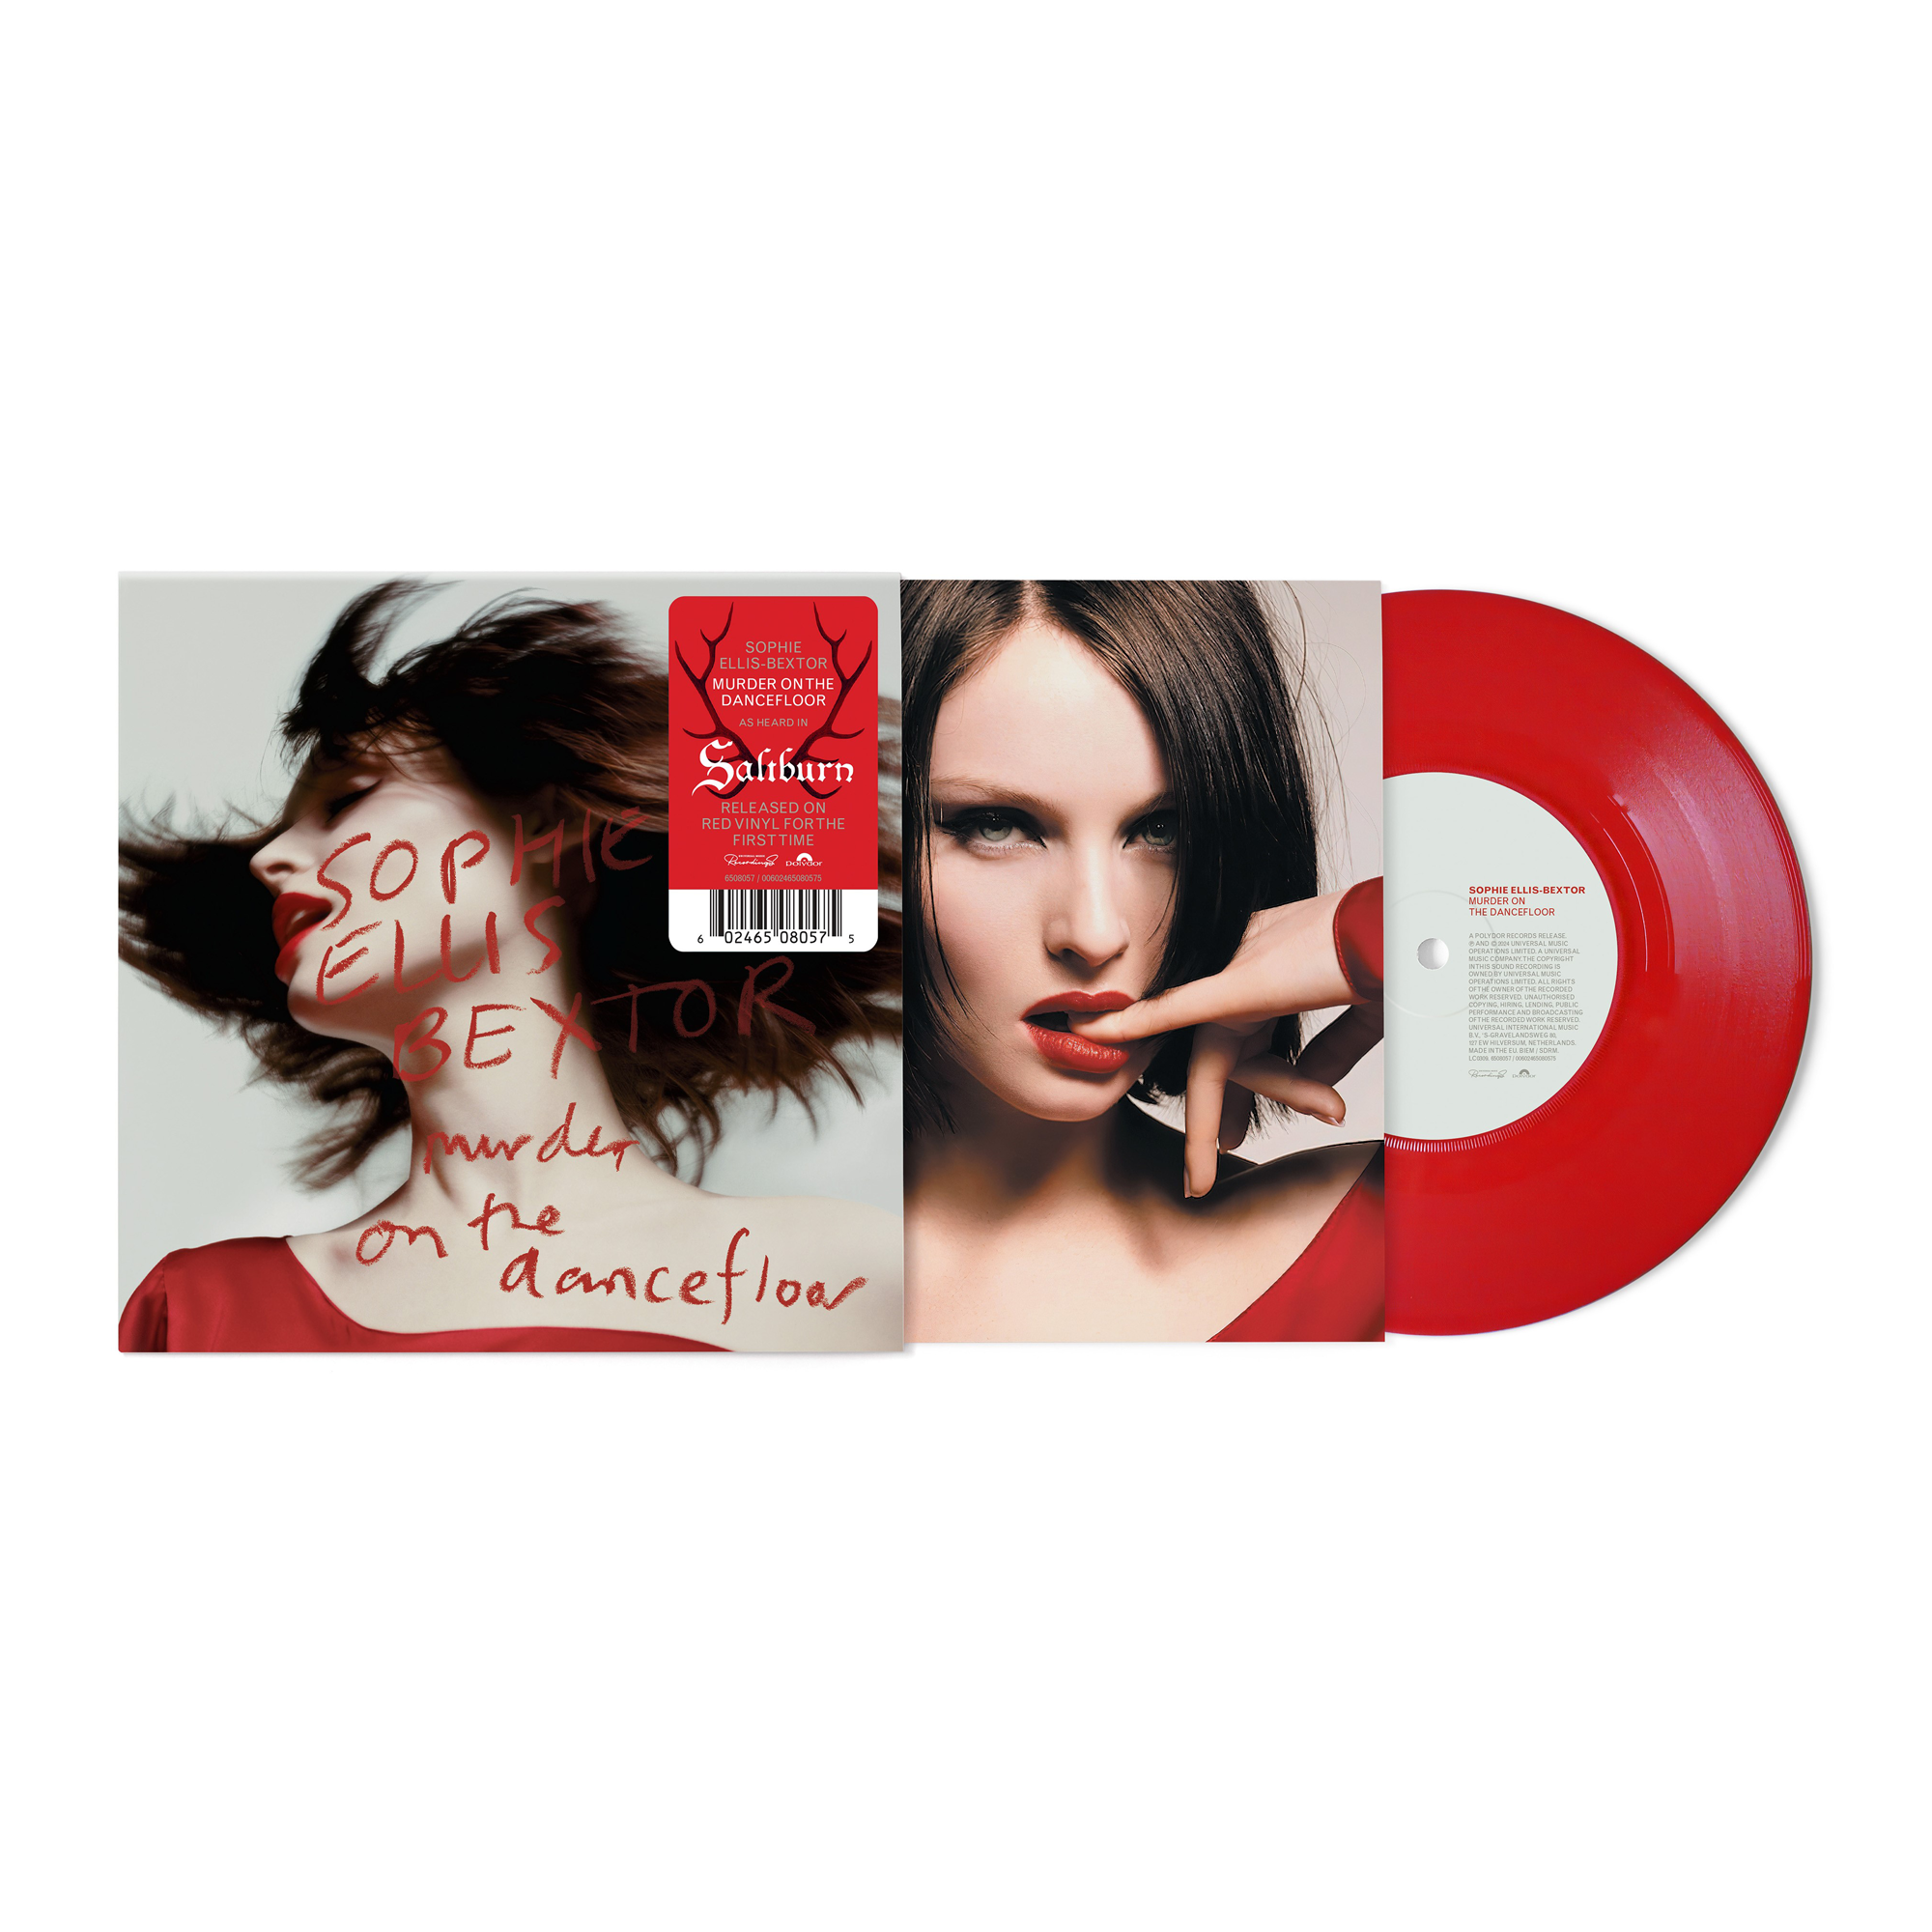 Sophie Ellis-Bextor - Murder On The Dancefloor: Limited Red Vinyl 7" Single